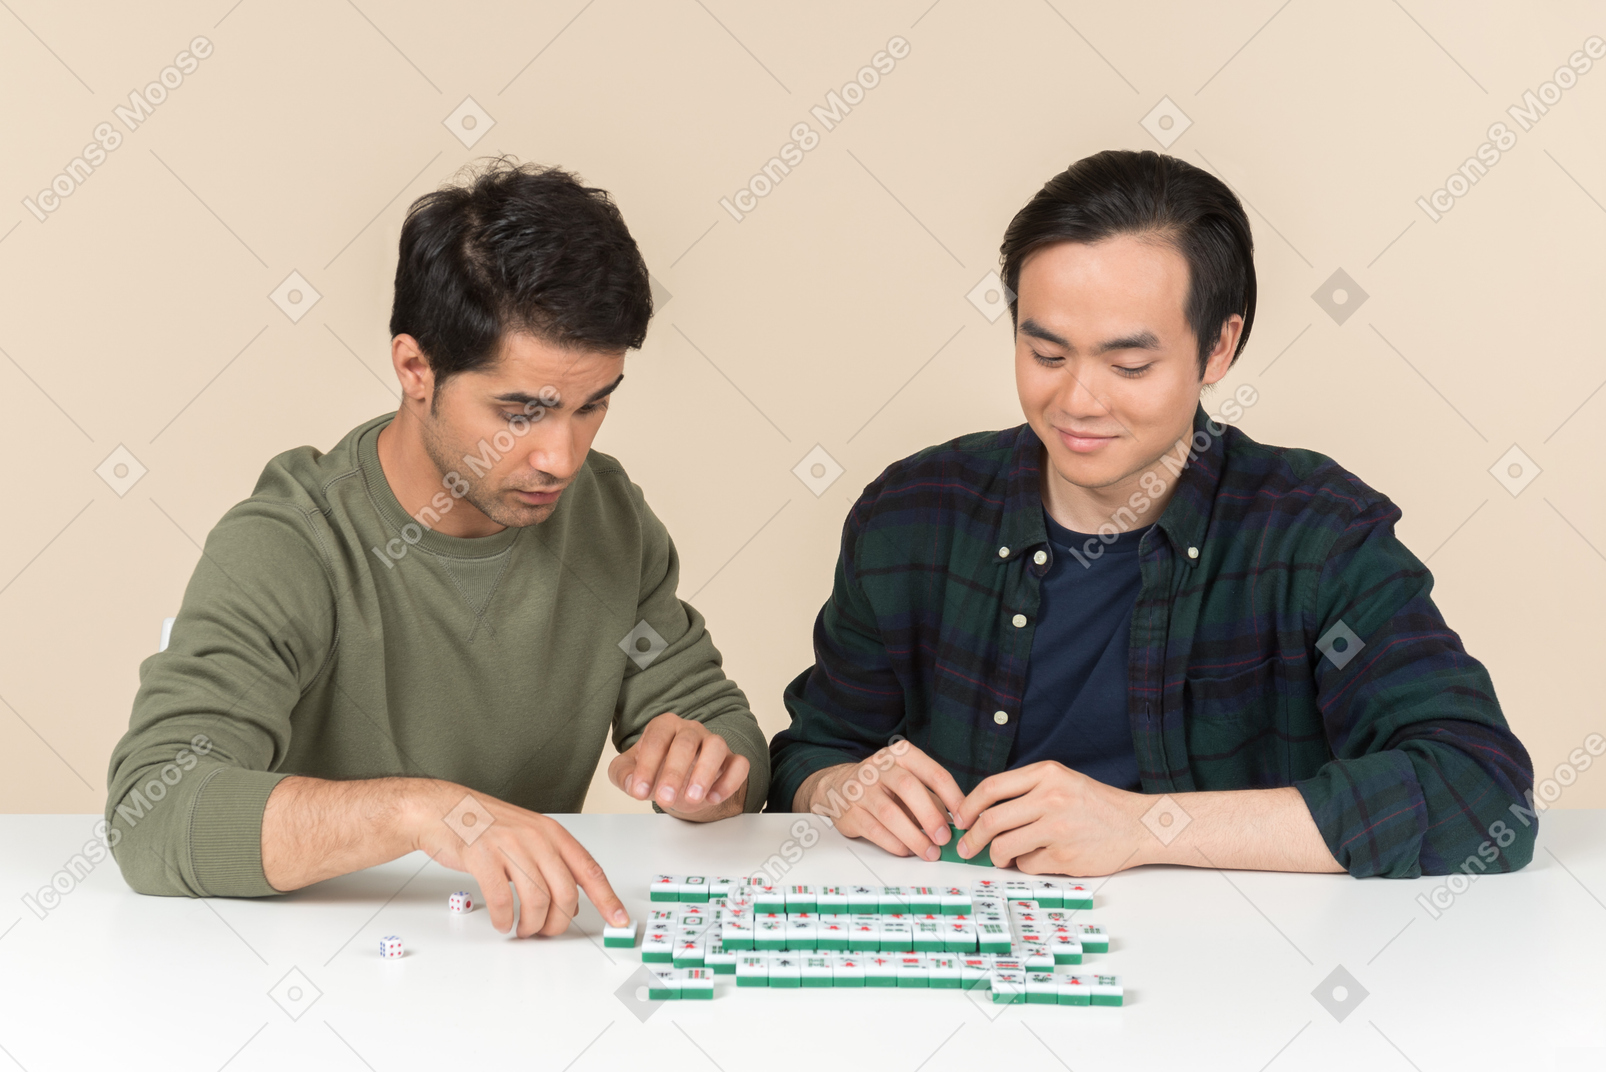 不同肤色的朋友坐在桌前和玩棋盘游戏